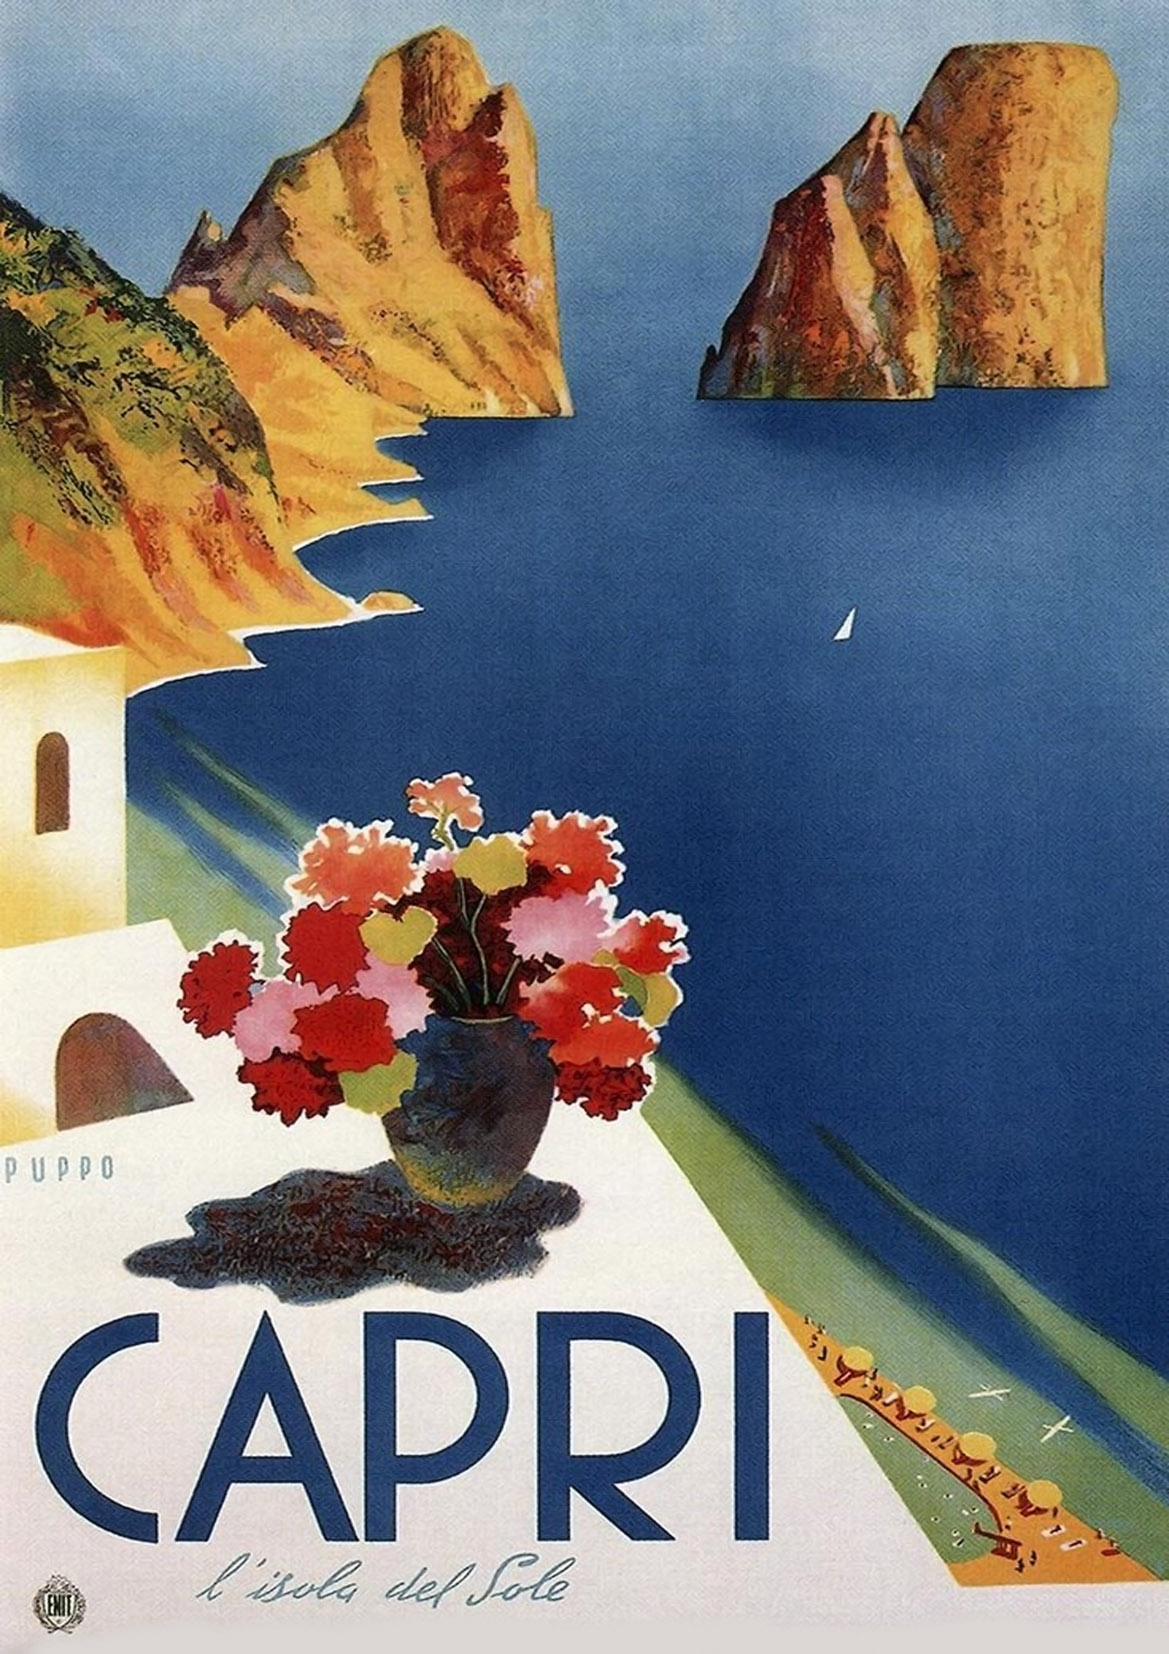 CARTEL DE TURISMO DE ABRUZZO: Cartel de viaje italiano vintage